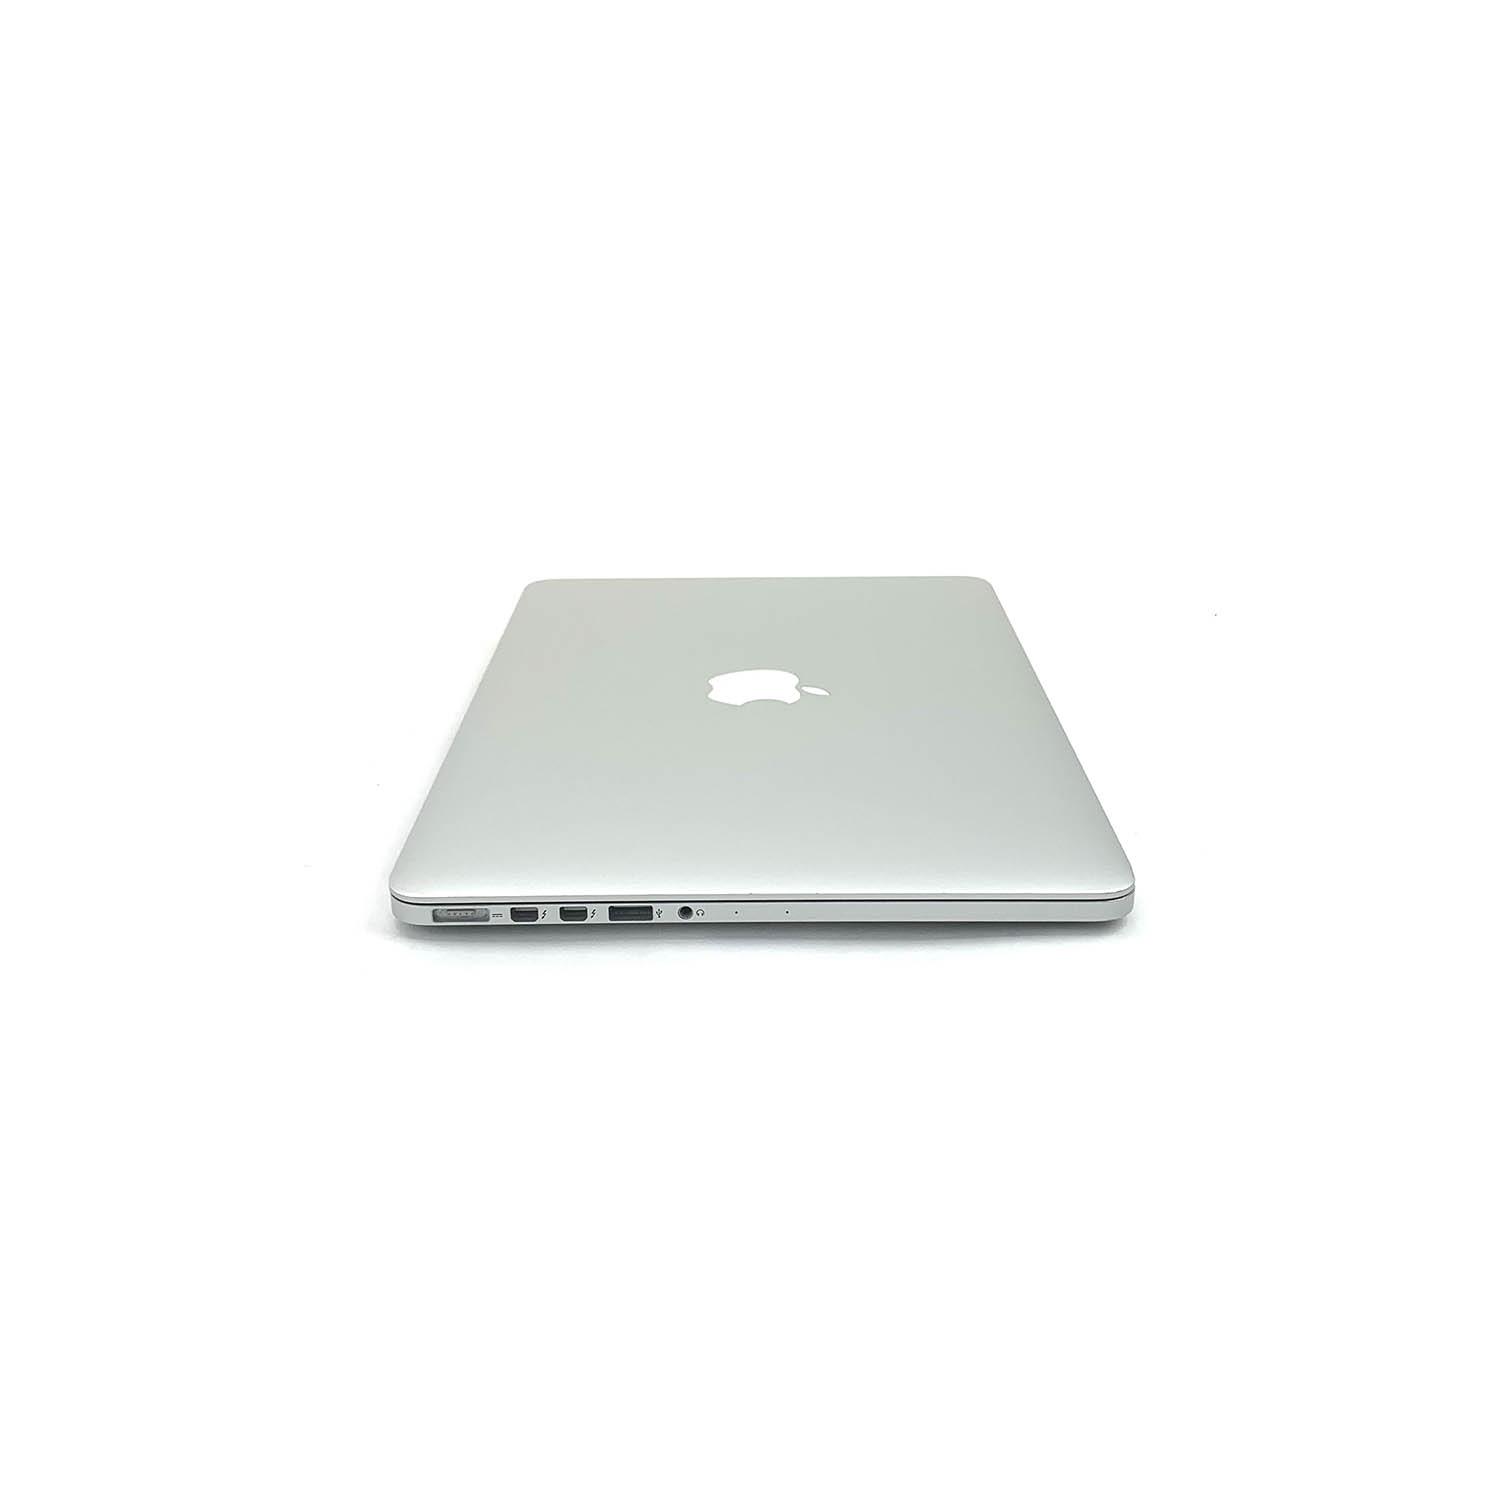 Macbook Pro Retina 13 i5 2.4Ghz 4GB 128GB SSD  ME864LL/A Seminovo